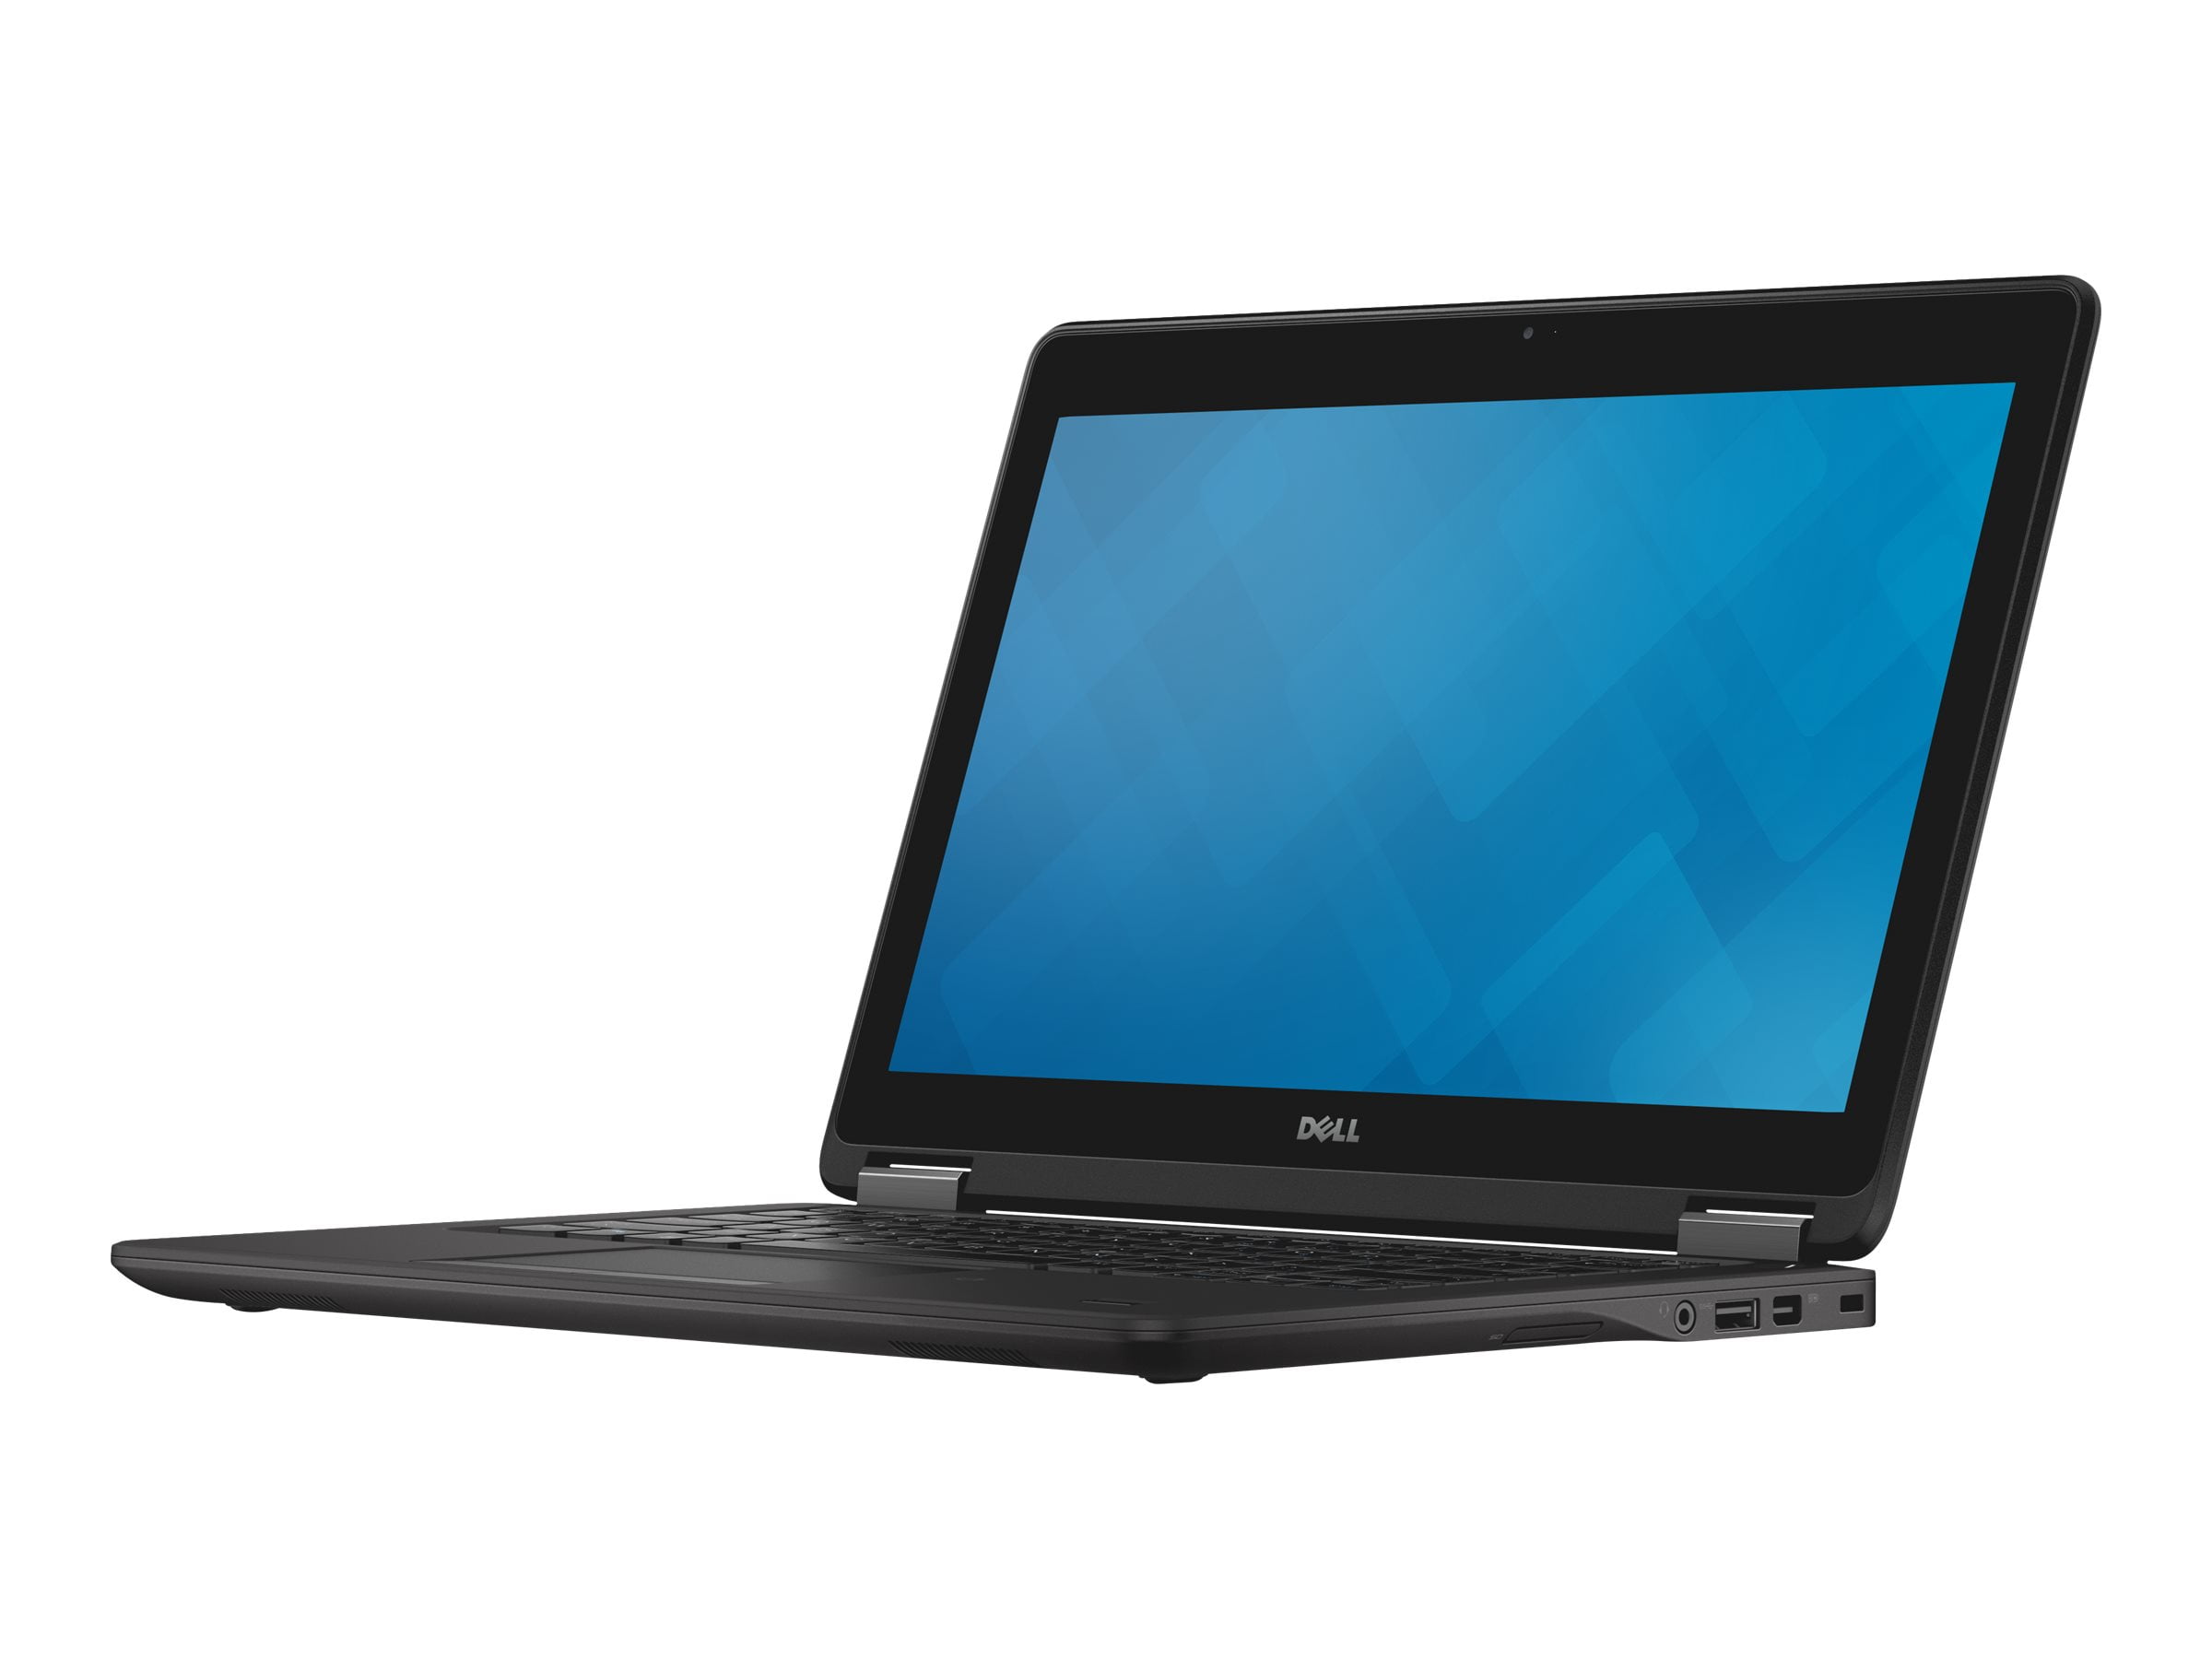 Restored Dell Latitude - Ultrabook - Core i5 5300U / 2.3 GHz - vPro - Win 10 Pro 64-bit - 8 GB RAM - 256 GB SSD - 12.5" 1366 x 768 - HD Graphics 5500 - black (Refurbished) - Walmart.com